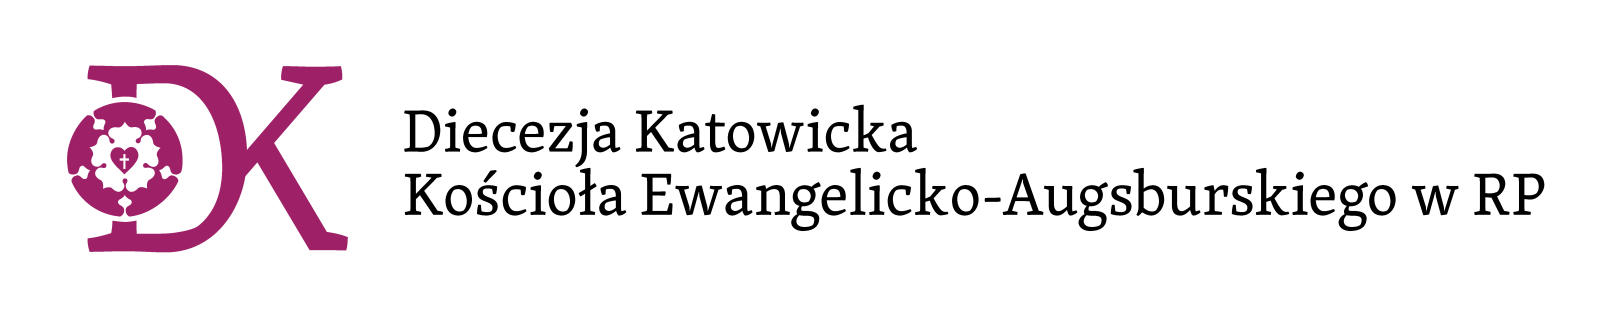 Diecezja Katowicka Kościoła Ewangelicko-Augsburskiego w Polsce